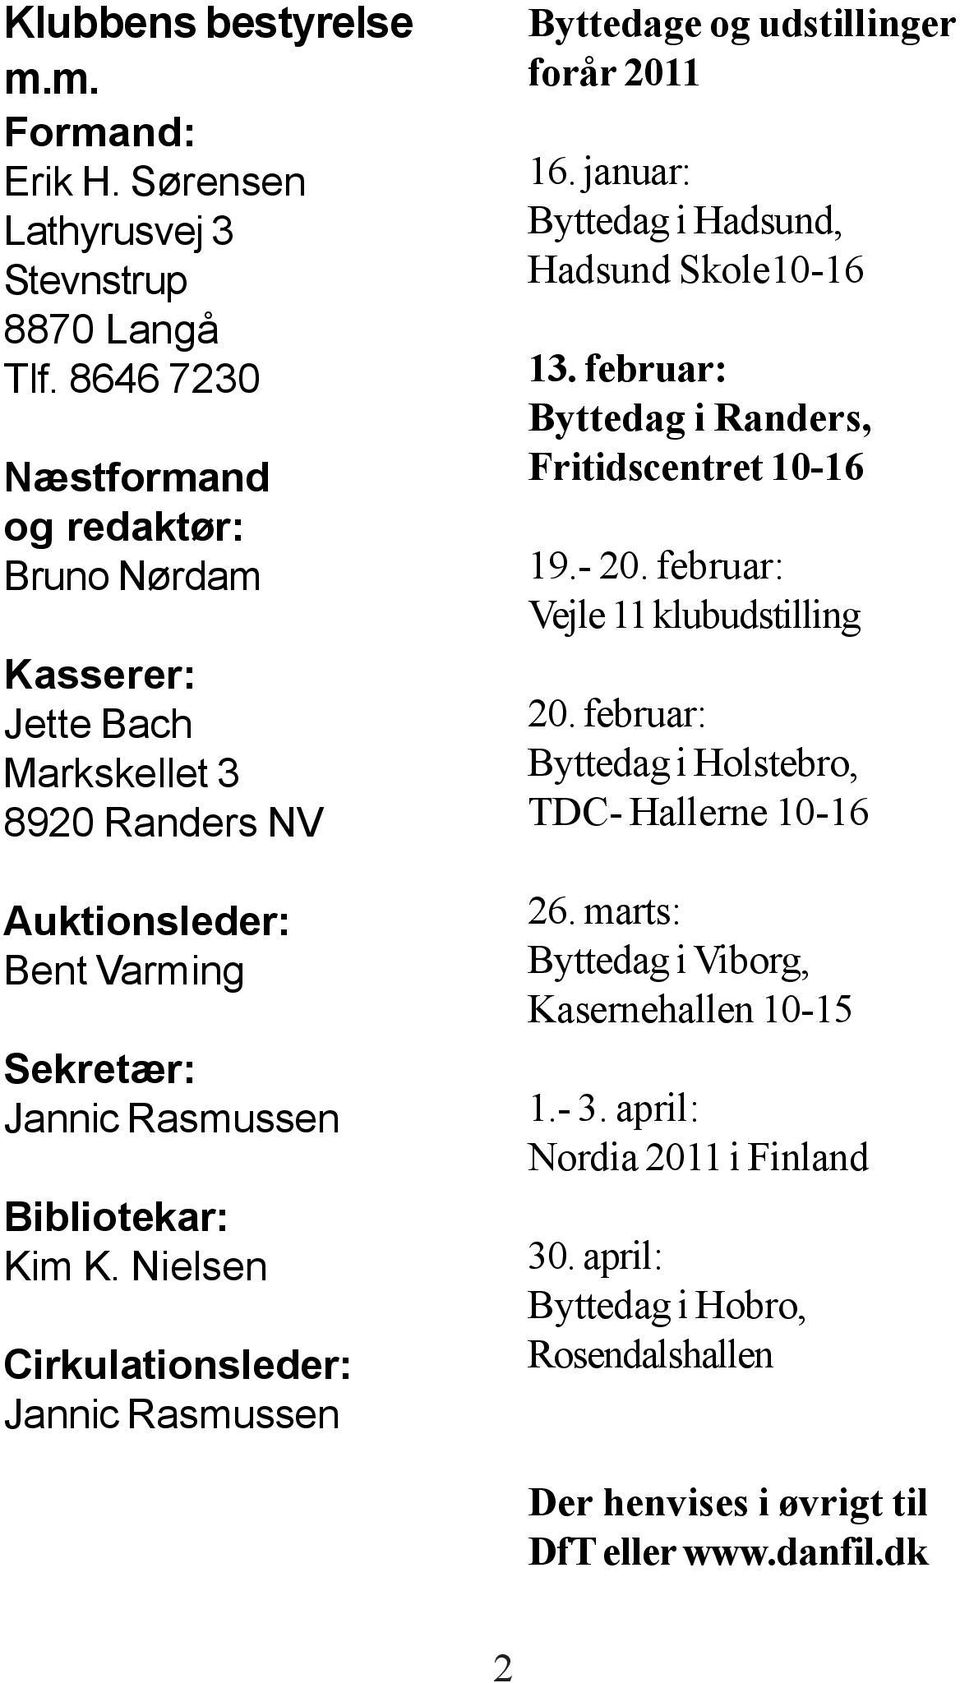 Nielsen Cirkulationsleder: Jannic Rasmussen Byttedage og udstillinger forår 2011 16. januar: Byttedag i Hadsund, Hadsund Skole10-16 13.